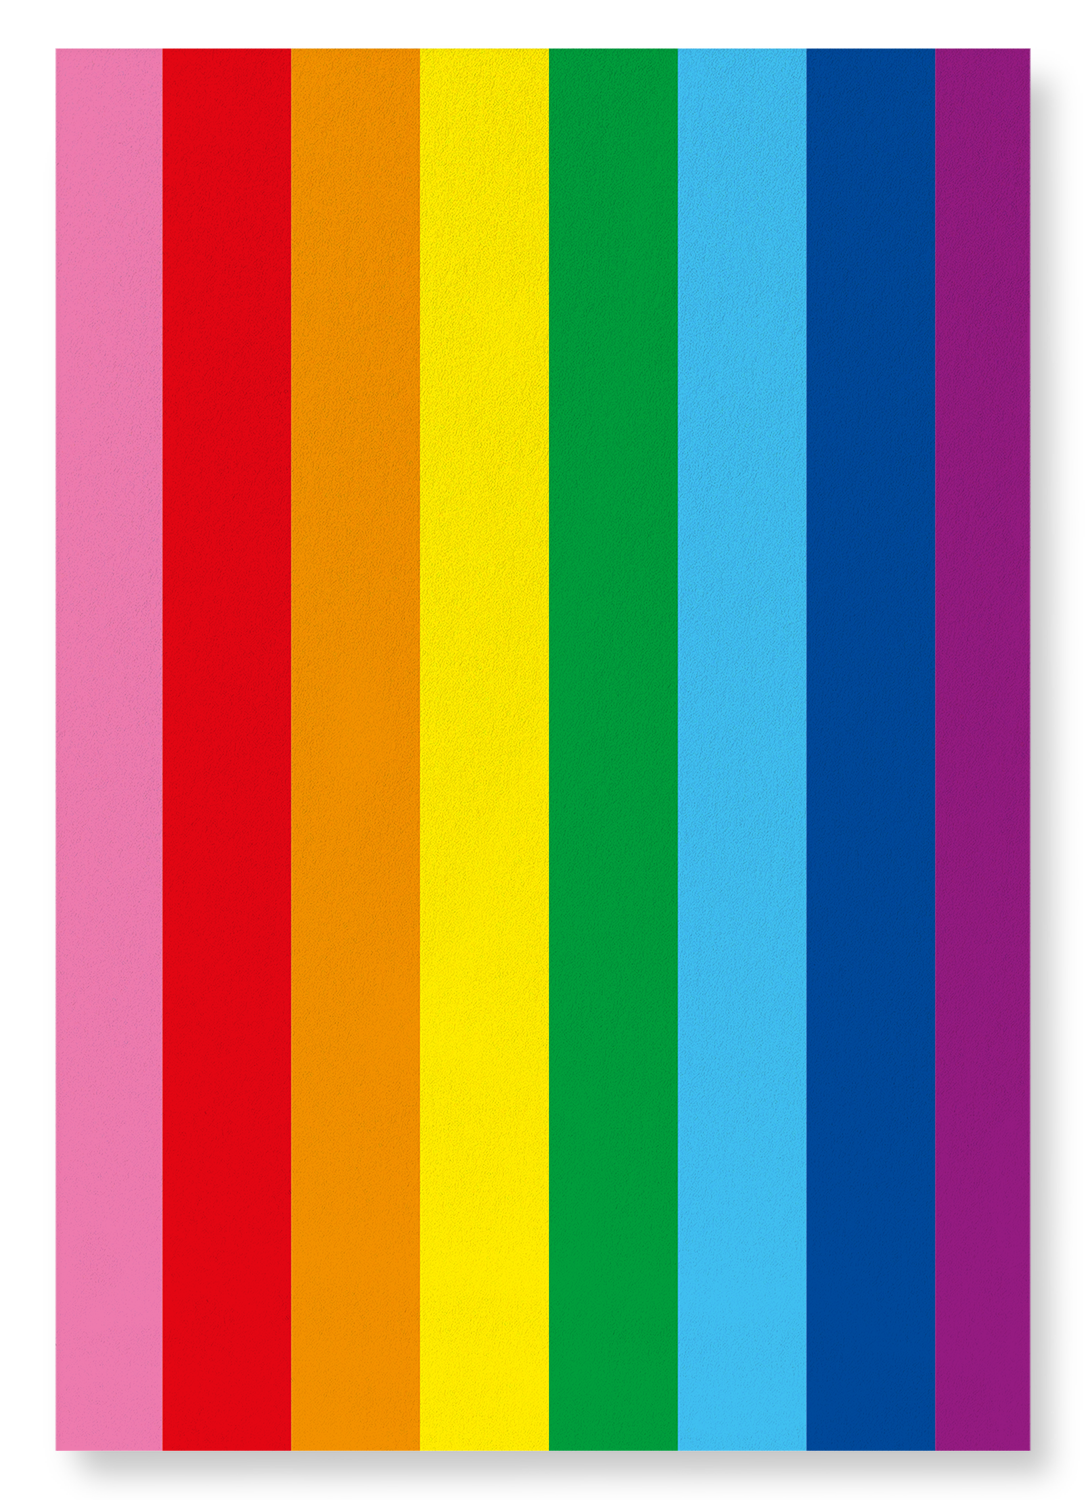 ORIGINAL 8 COLOUR LGBT PRIDE FLAG